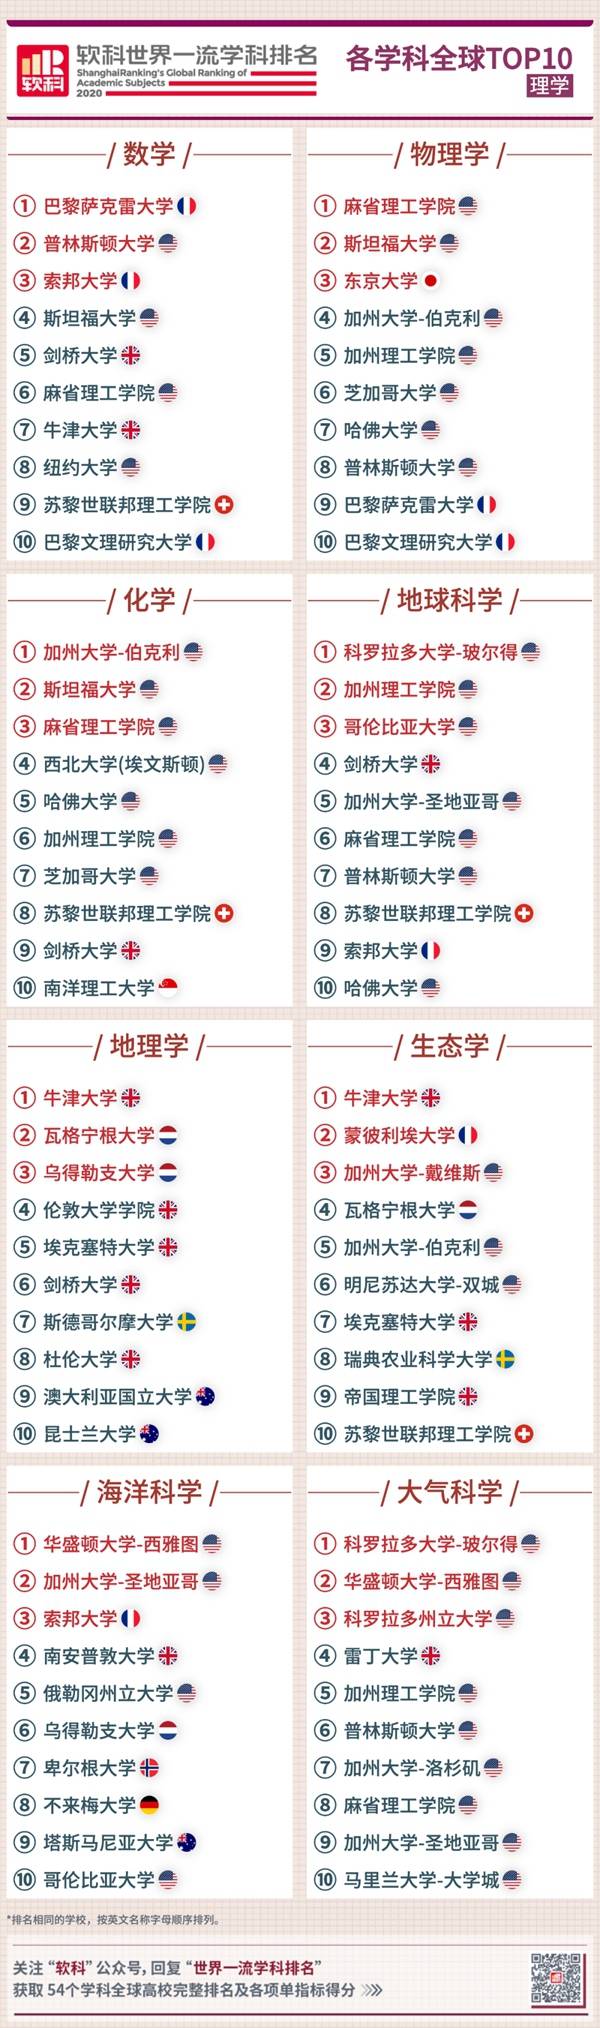 2020软科中国大学排名_QS中国高校世界排名,与软科中国最好高校排名,前7位